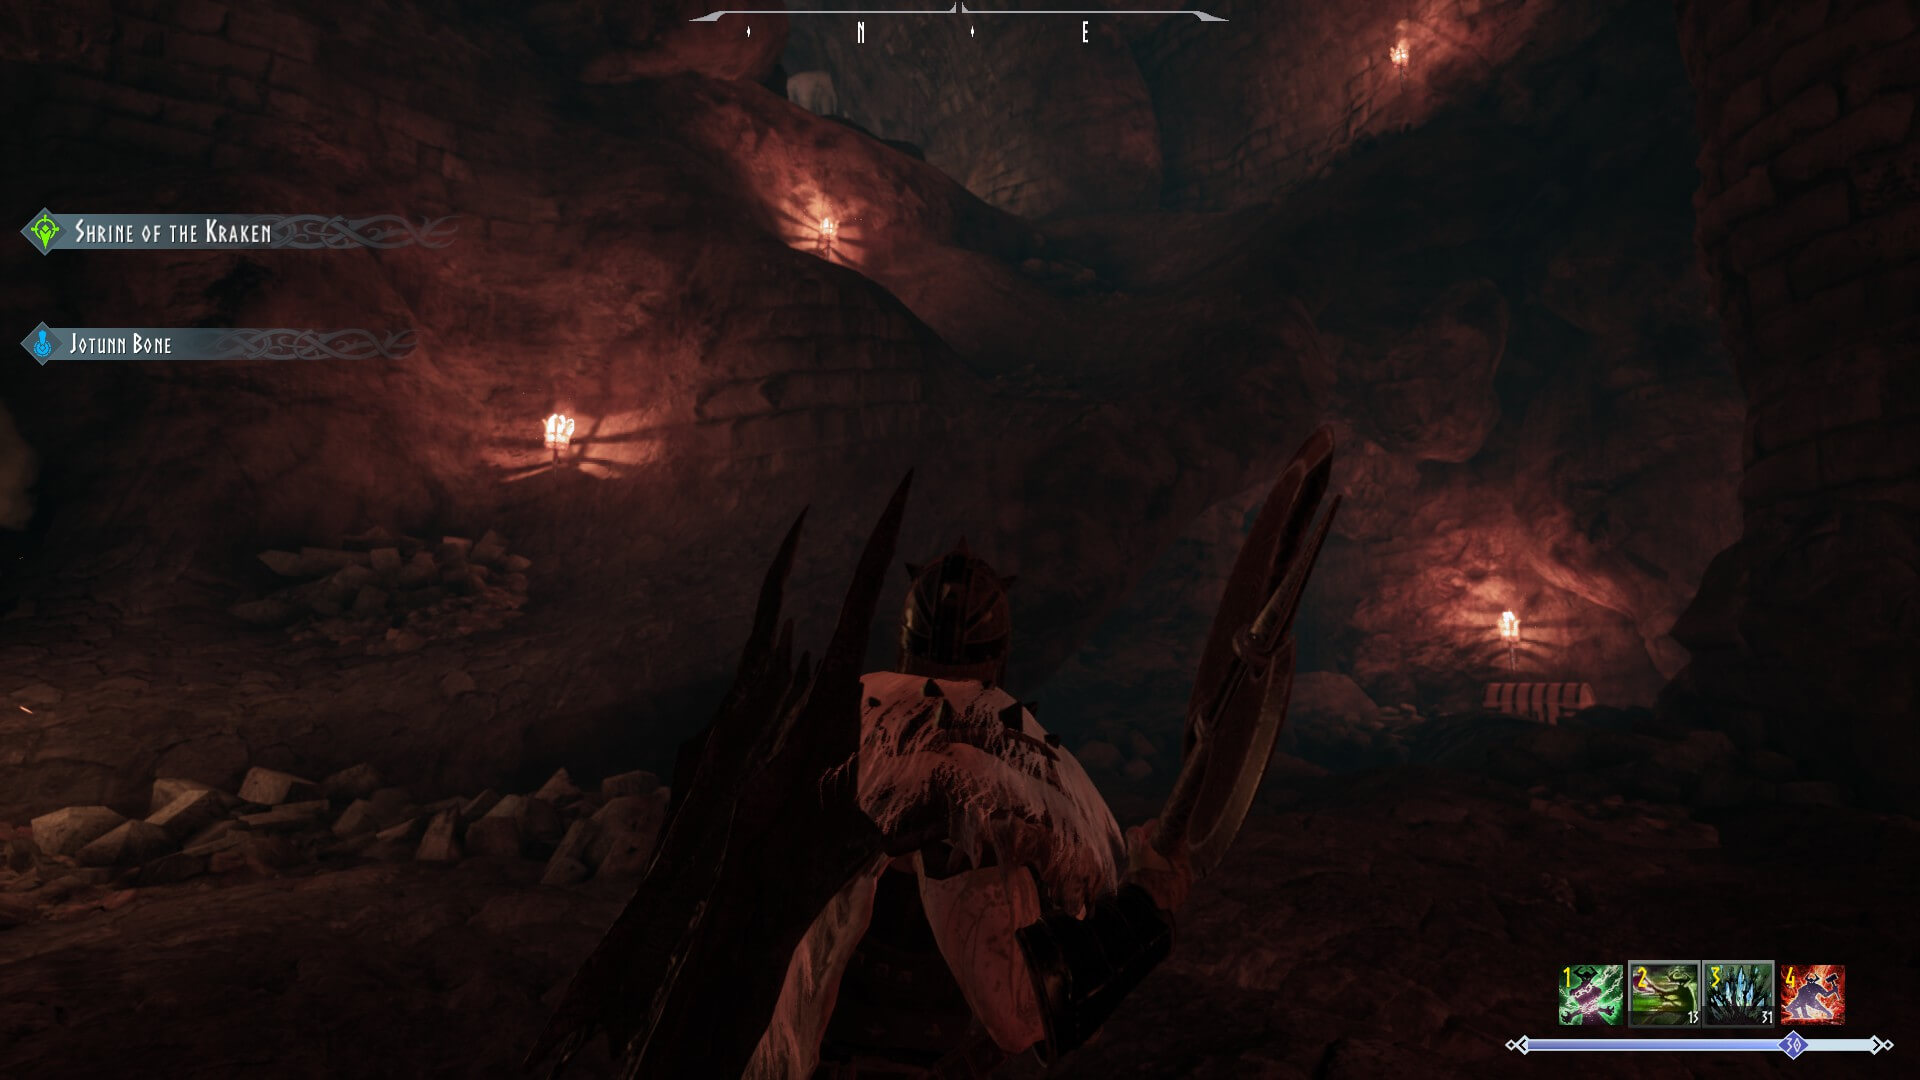 Rune II Skadi's Cavern